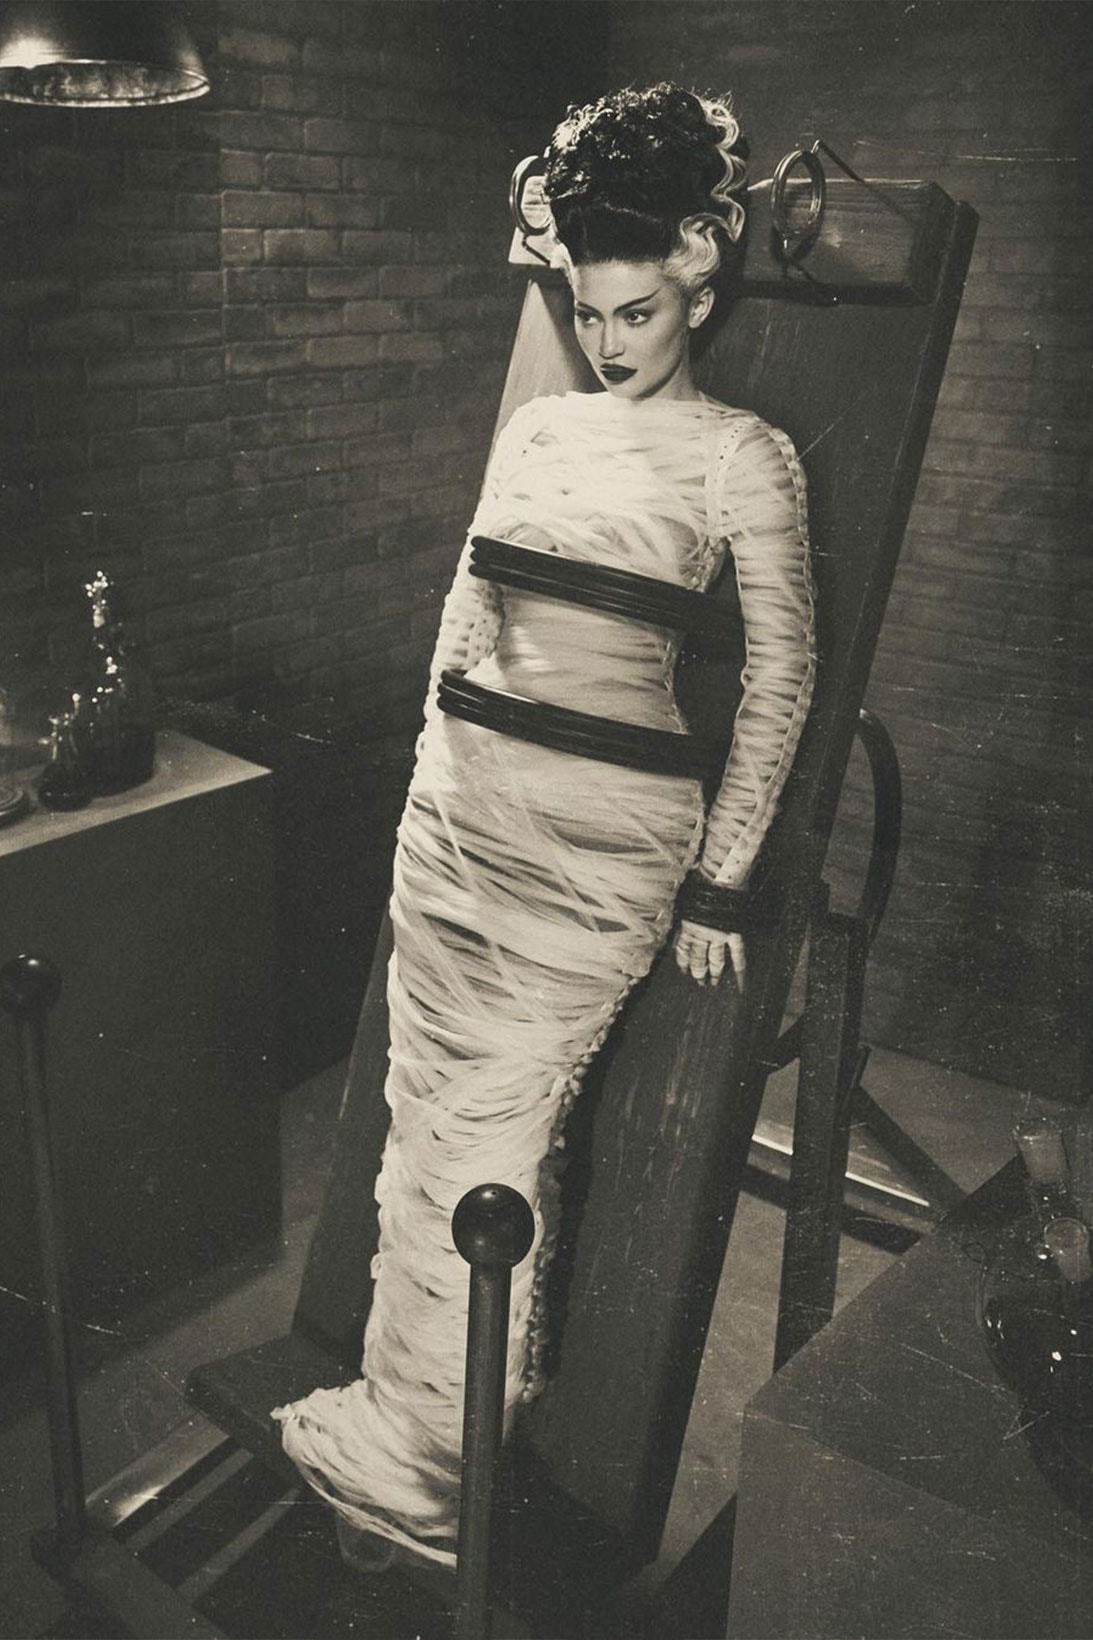 Kylie Jenner Halloween Costume Bride of Frankenstein Elsa Lanchester Images 